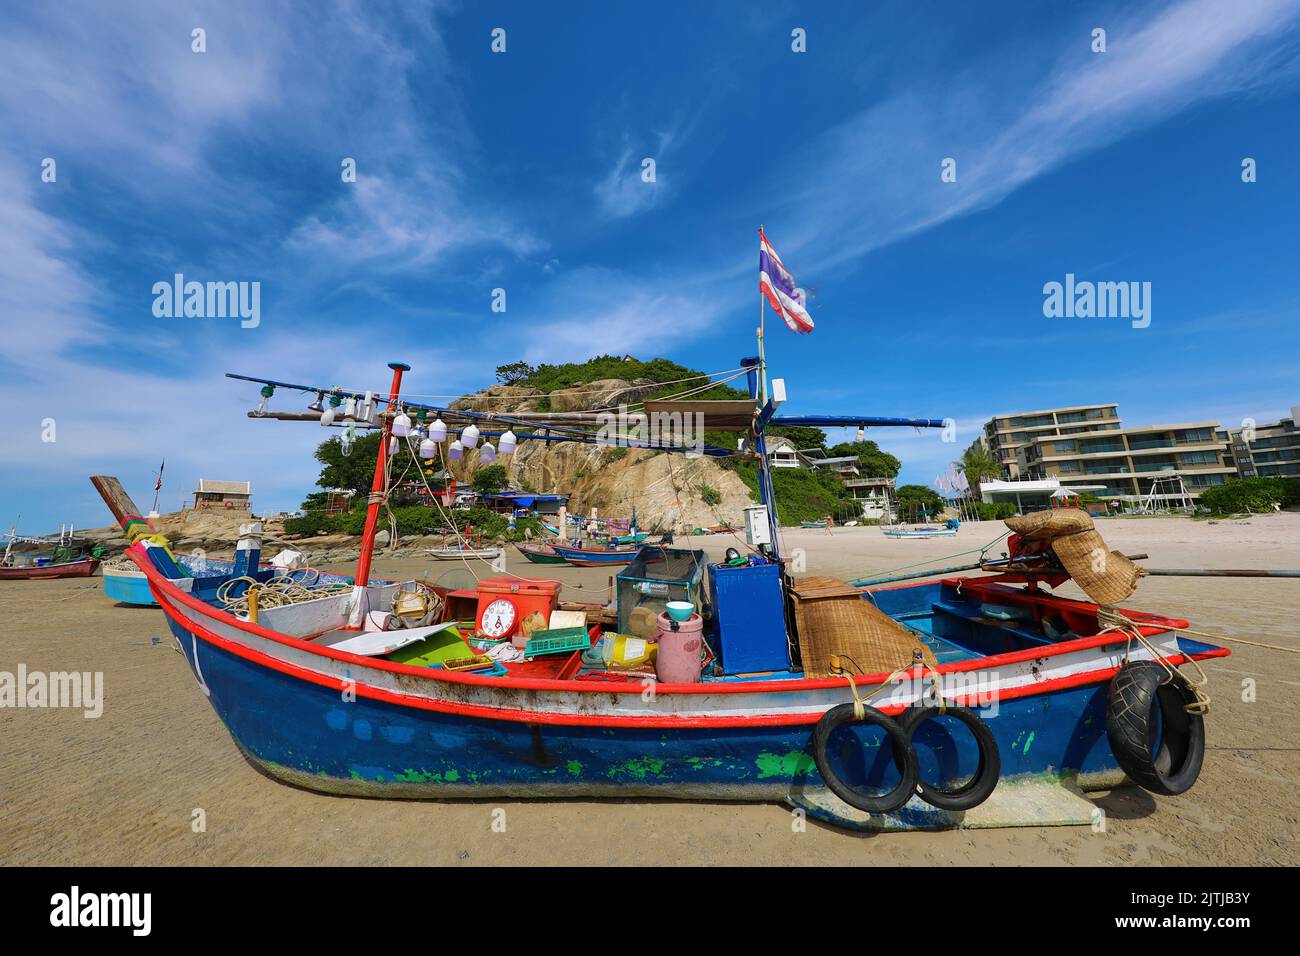 Bateau de pêche pêché sur la plage de Khao Takiab, Hua Hin, Thaïlande Banque D'Images